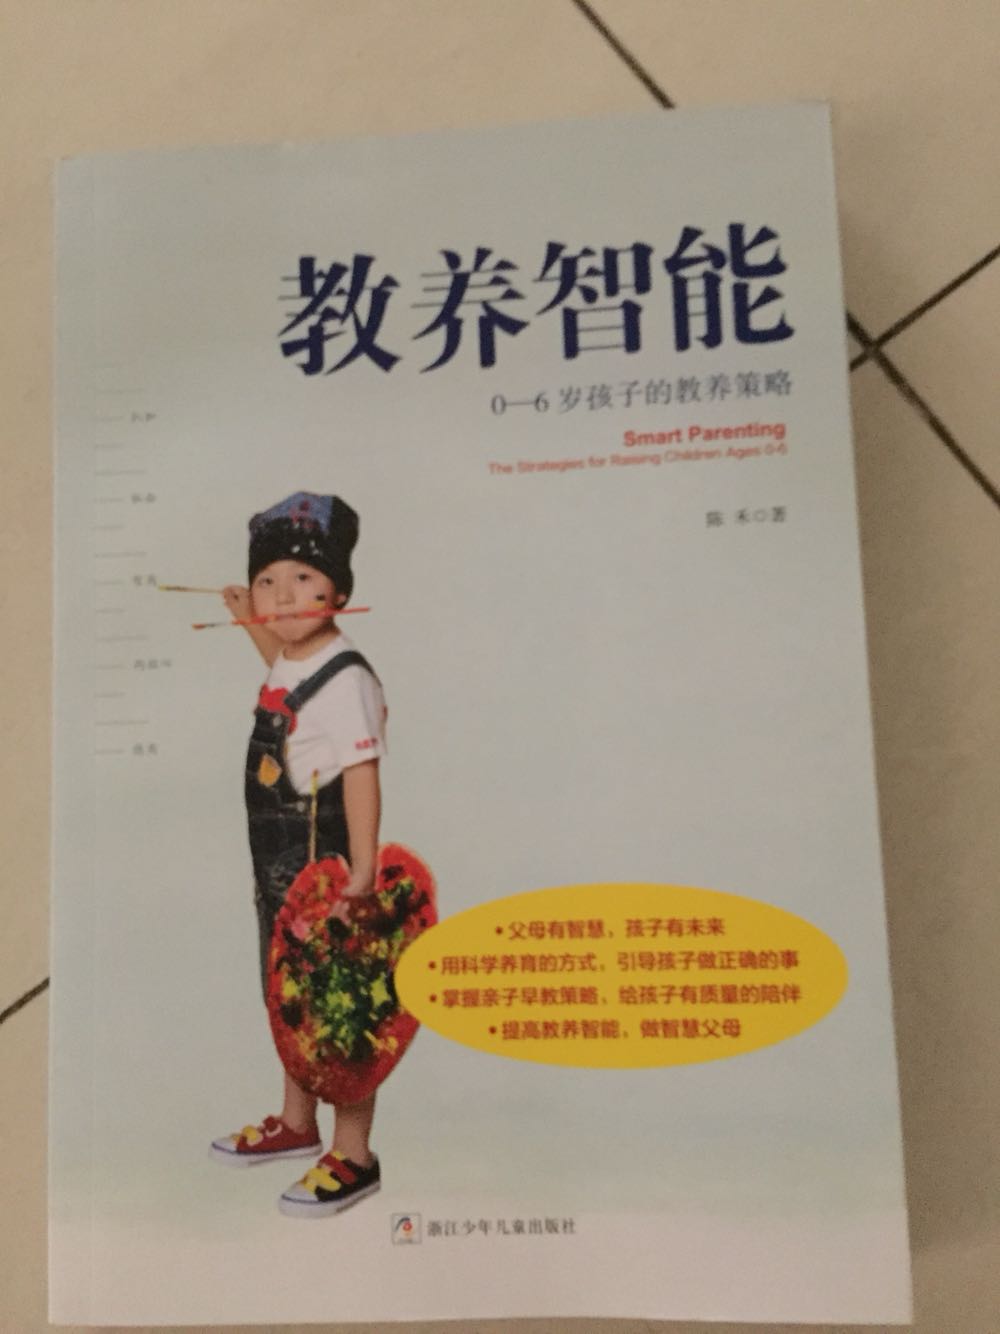 微博关注陈禾老师很久了，这本书也是放购物车很久了，在世界读书日活动中2-1买了下来。0-6岁孩子的教养策略。父母有智慧，孩子有未来。用科学养育的方式，引导孩子做正确的事。